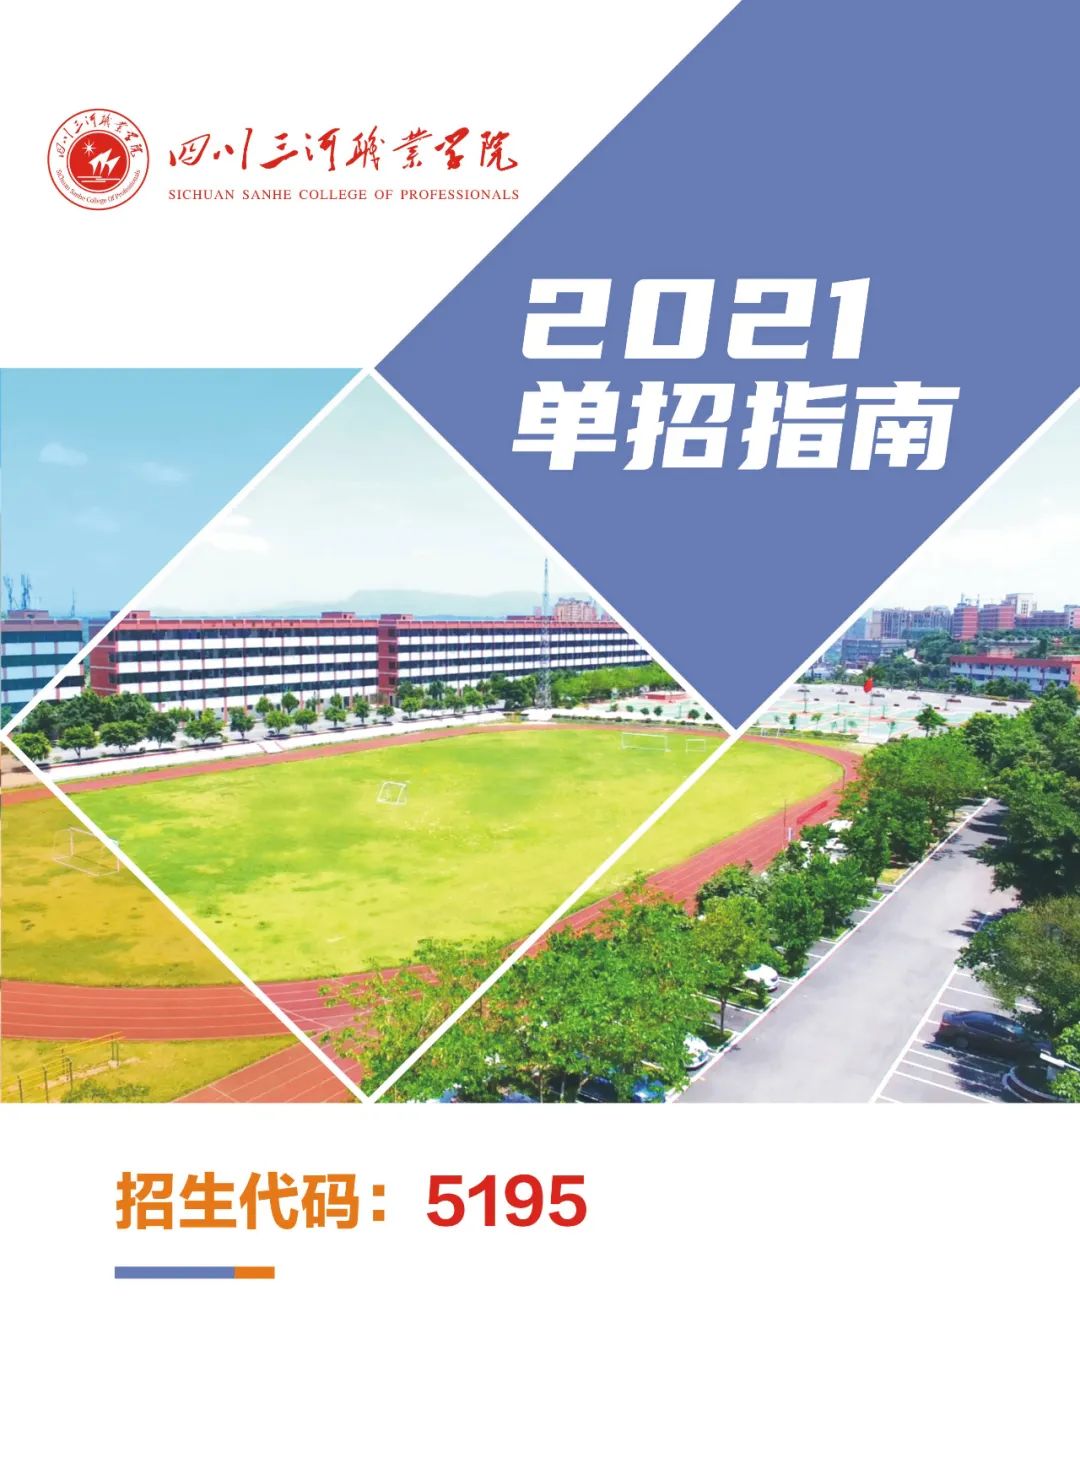 四川三河职业学院2021单招指南